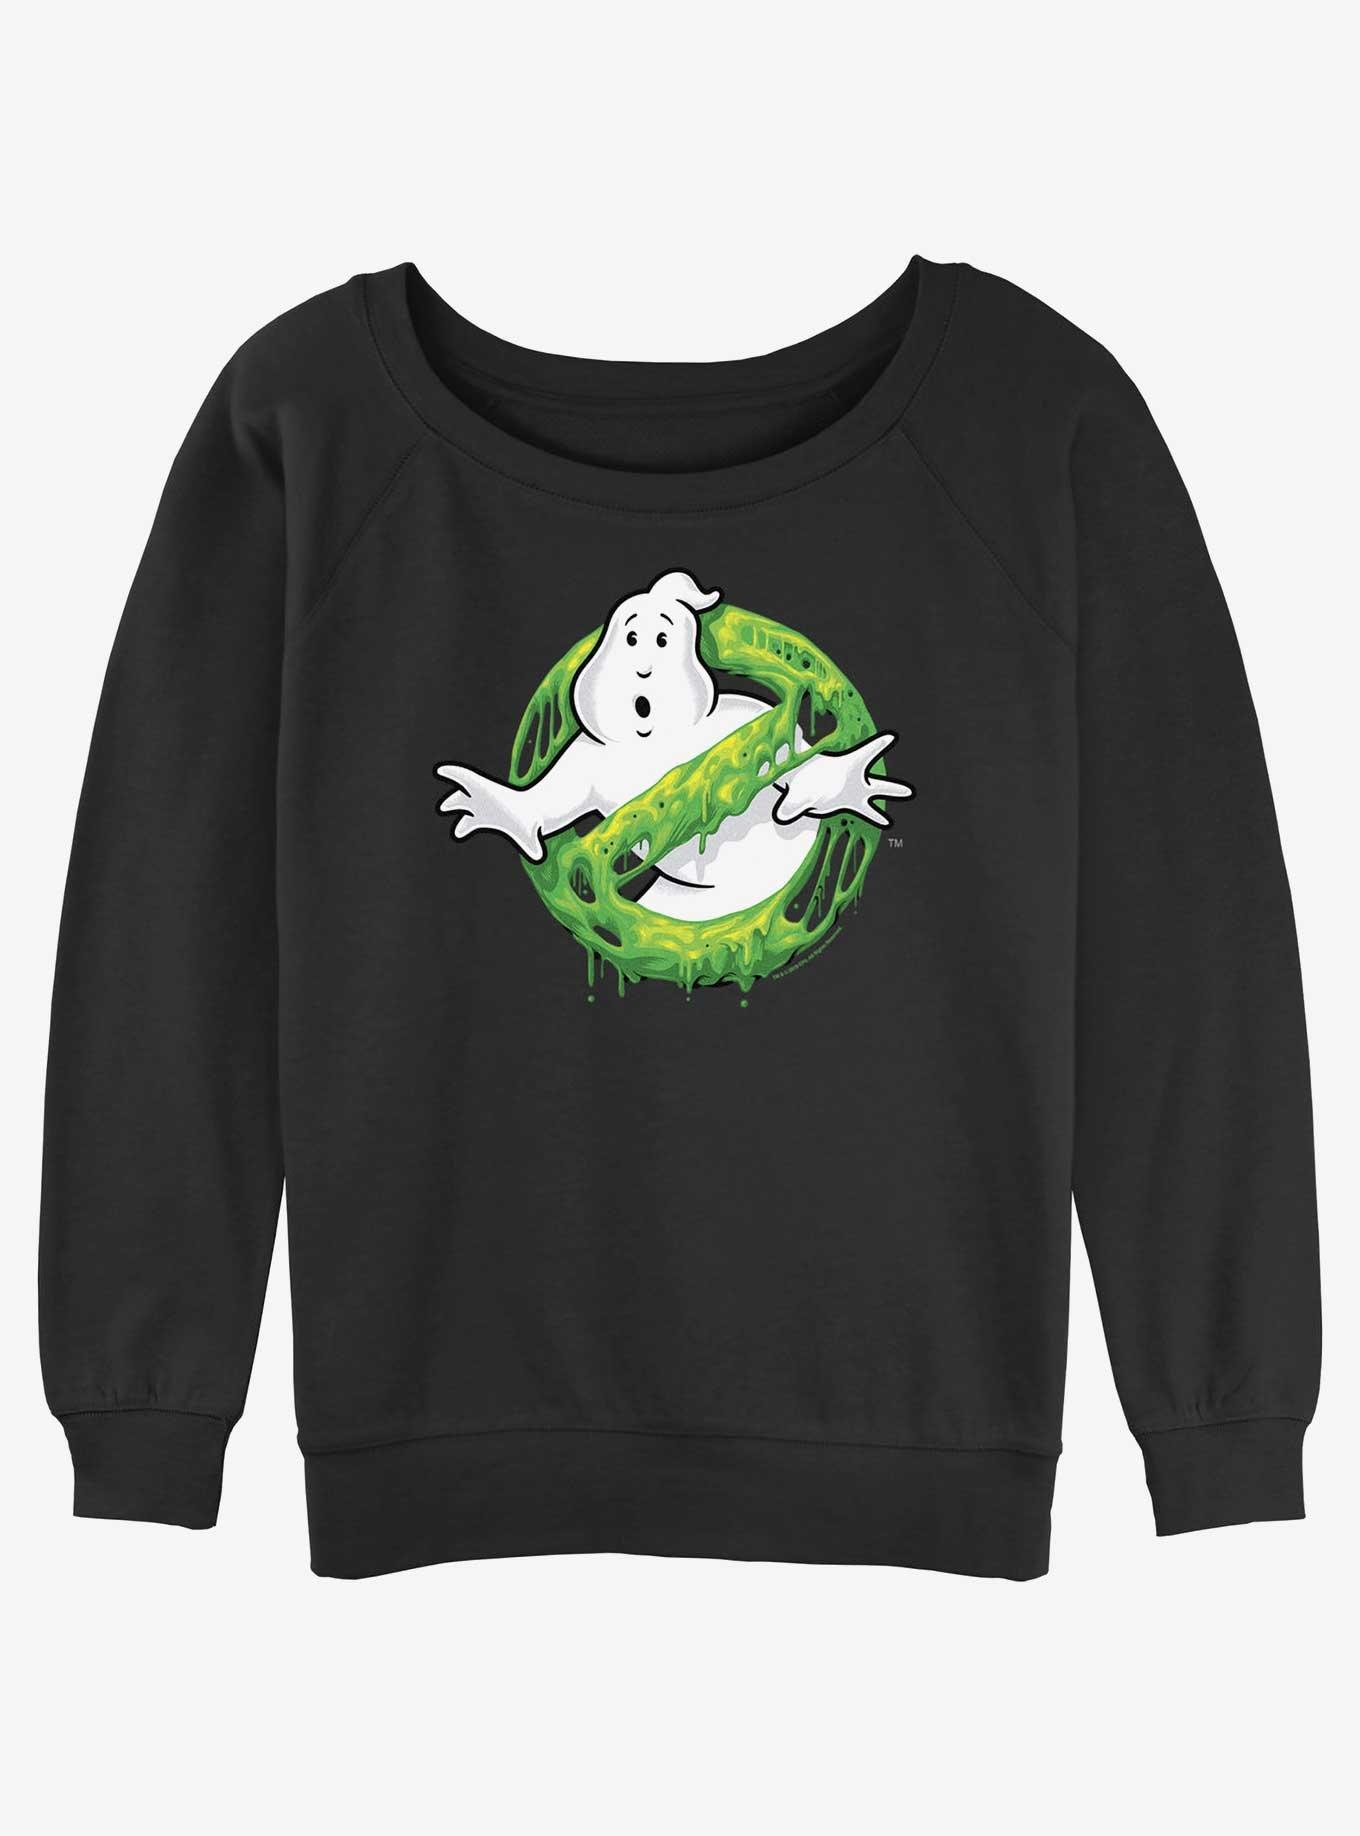 Ghostbusters Green Slime Logo Girls Slouchy Sweatshirt, BLACK, hi-res